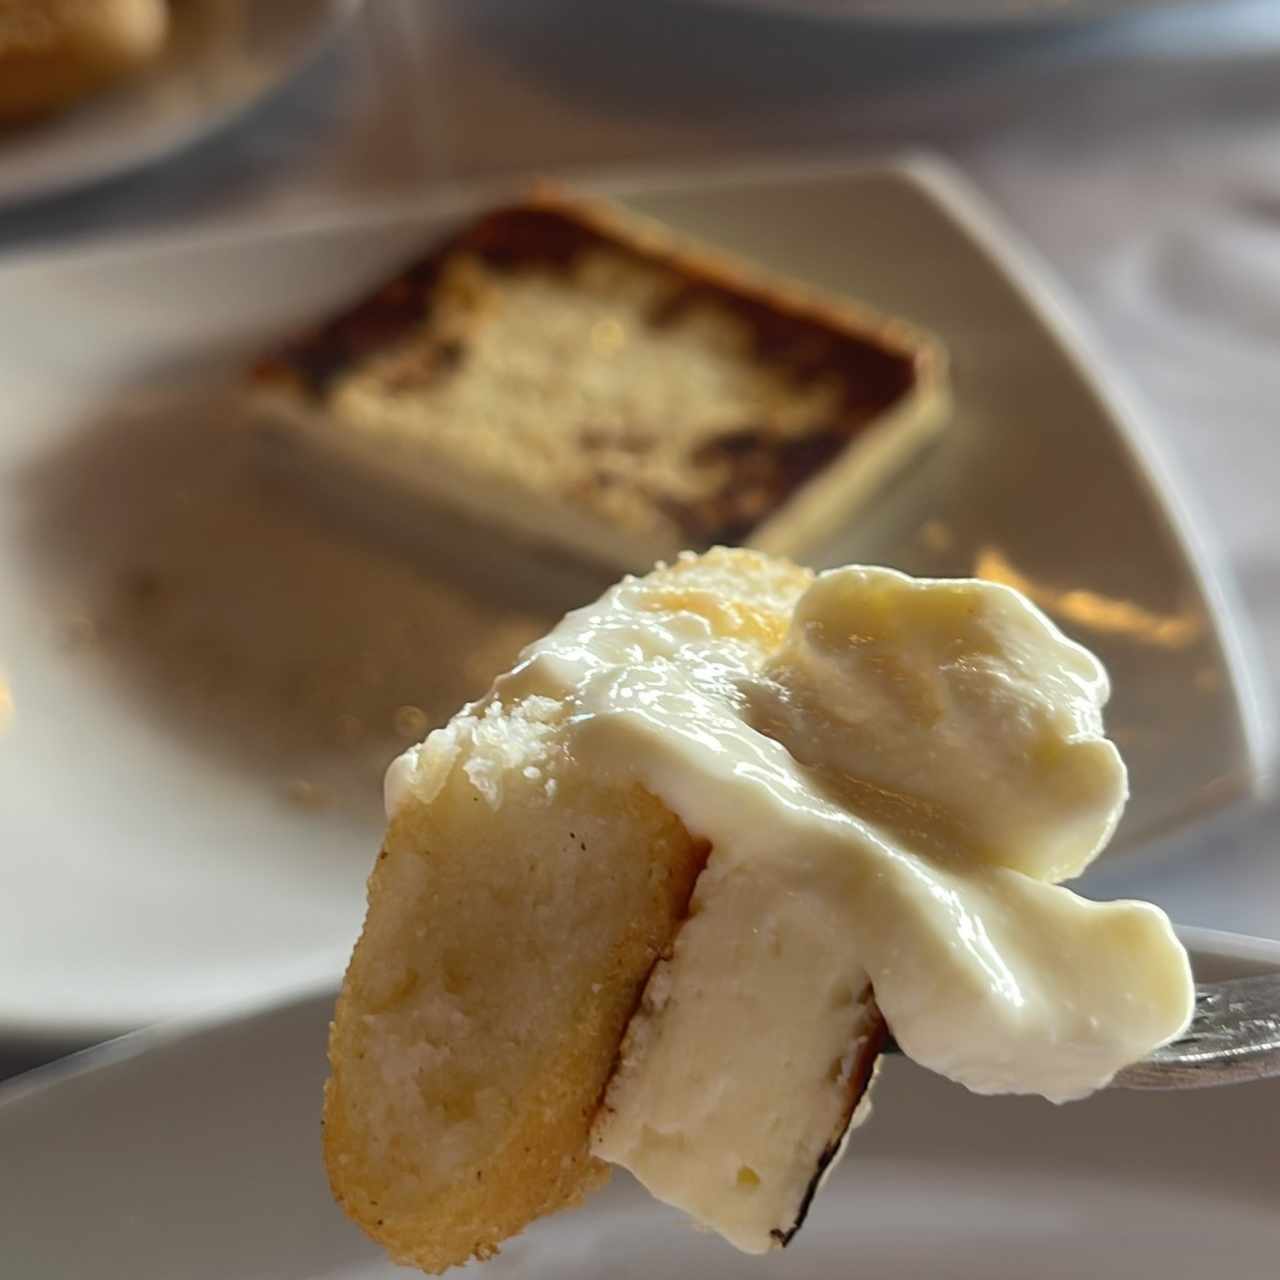 Entrada de arepitas, queso blanco a la plancha y nata. 